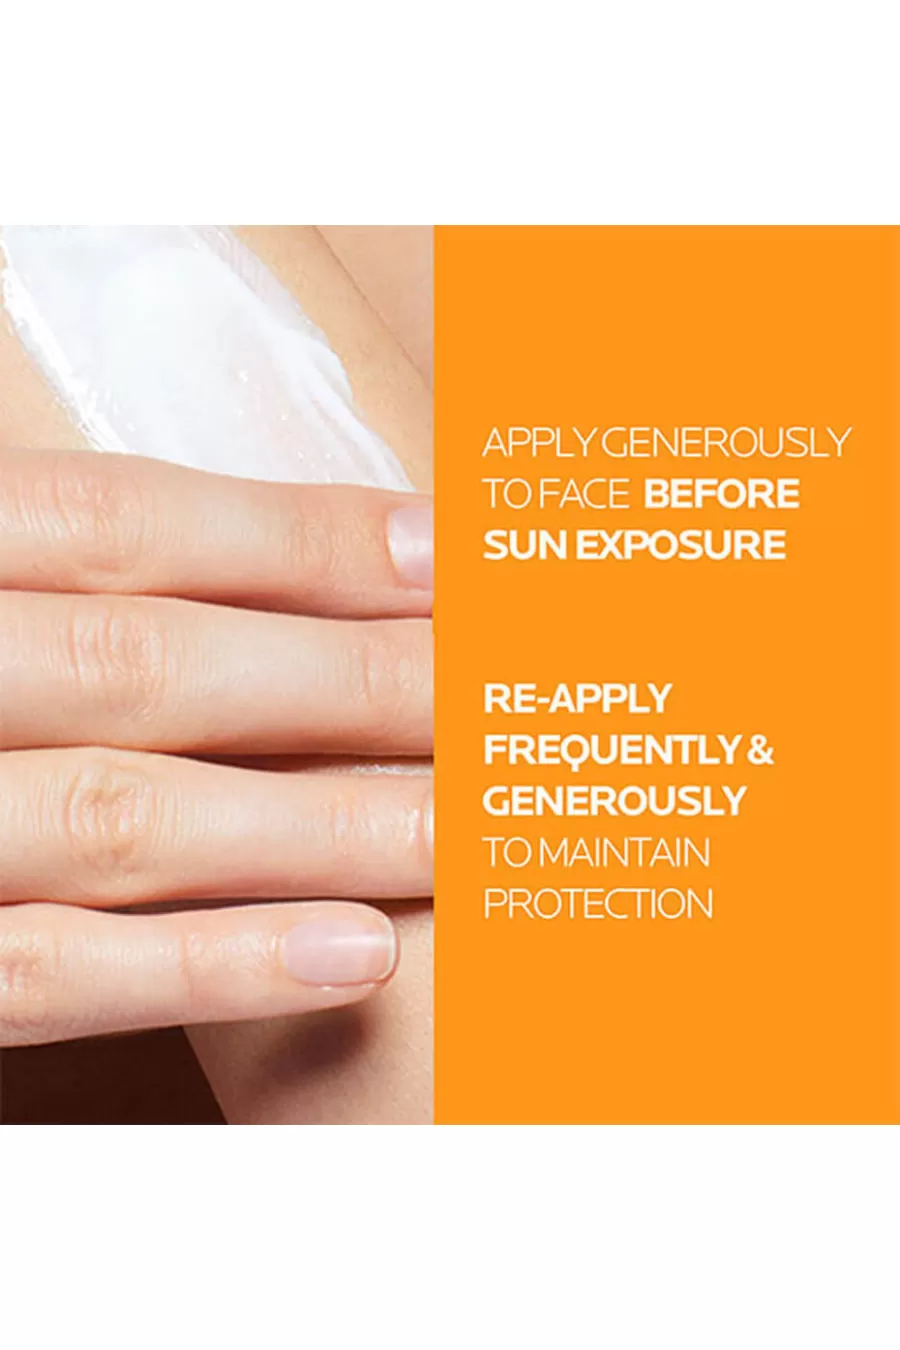 ضد آفتاب SPF 50  بی رنگ فرمولاسیون غیر چرب برای پوست های حساس لاروش پوزای LA ROCH POSAY ضد آفتاب فلوئید